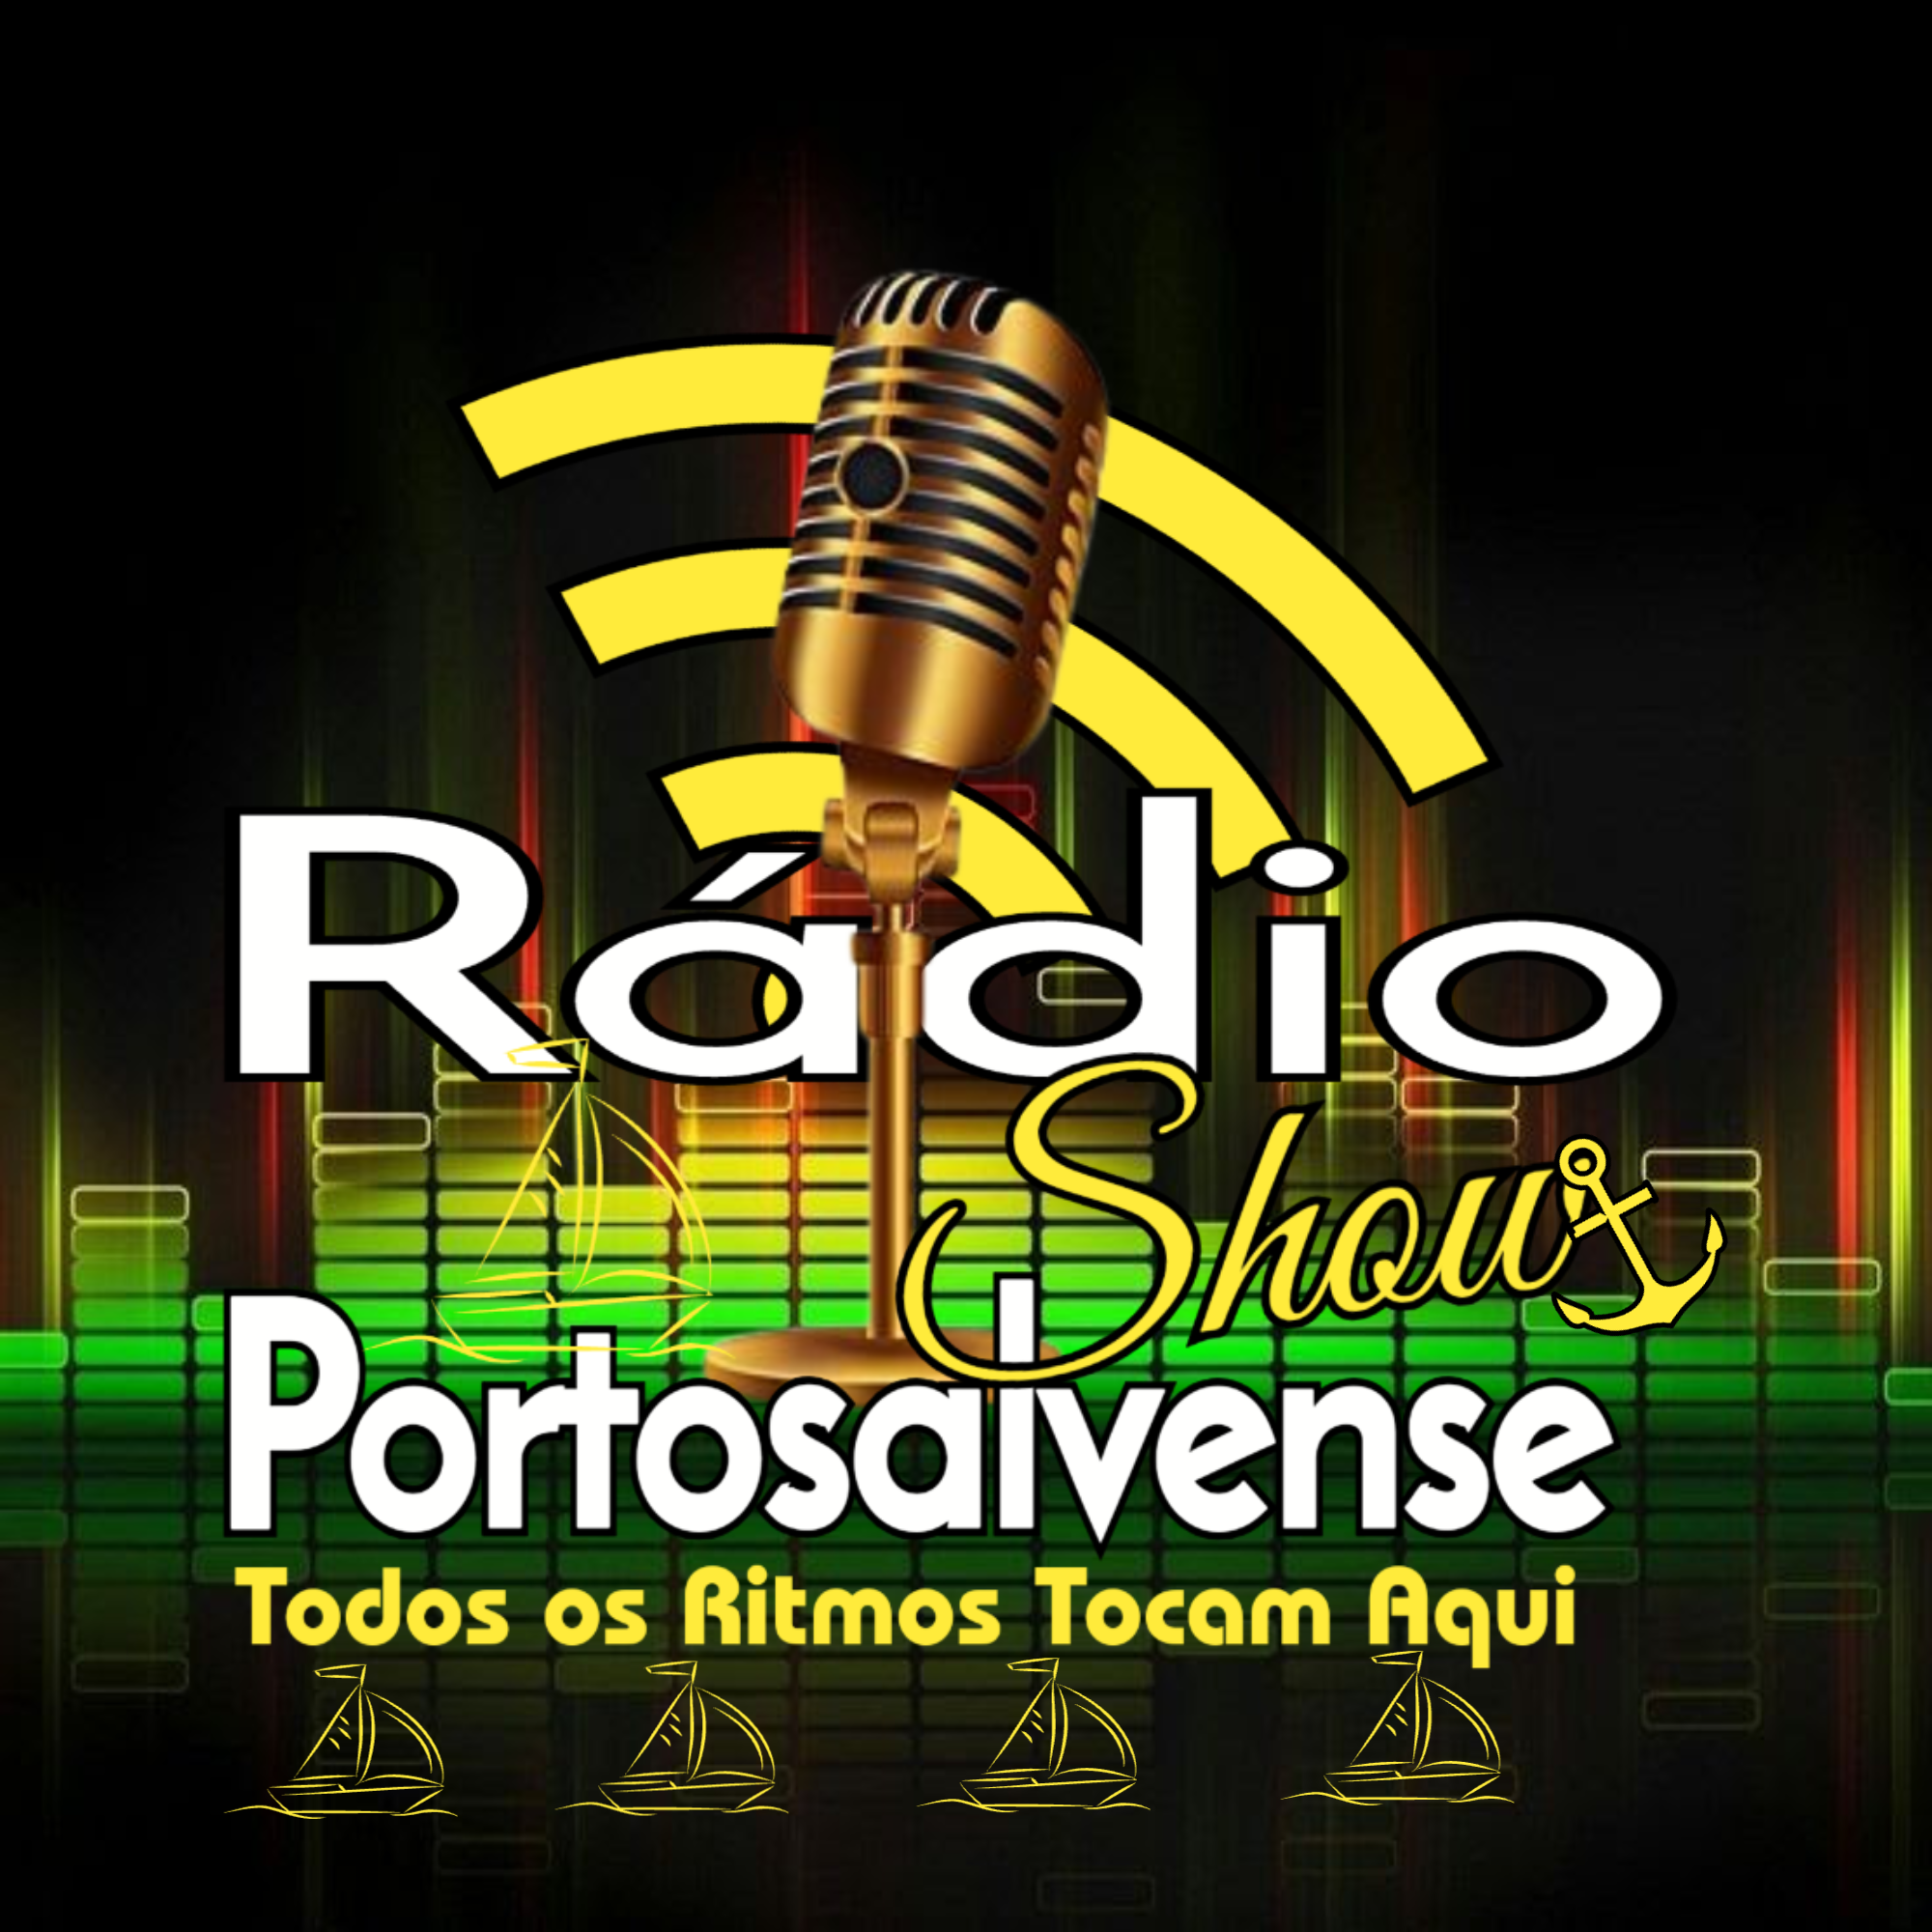 RADIO SHOW PORTOSALVENSE